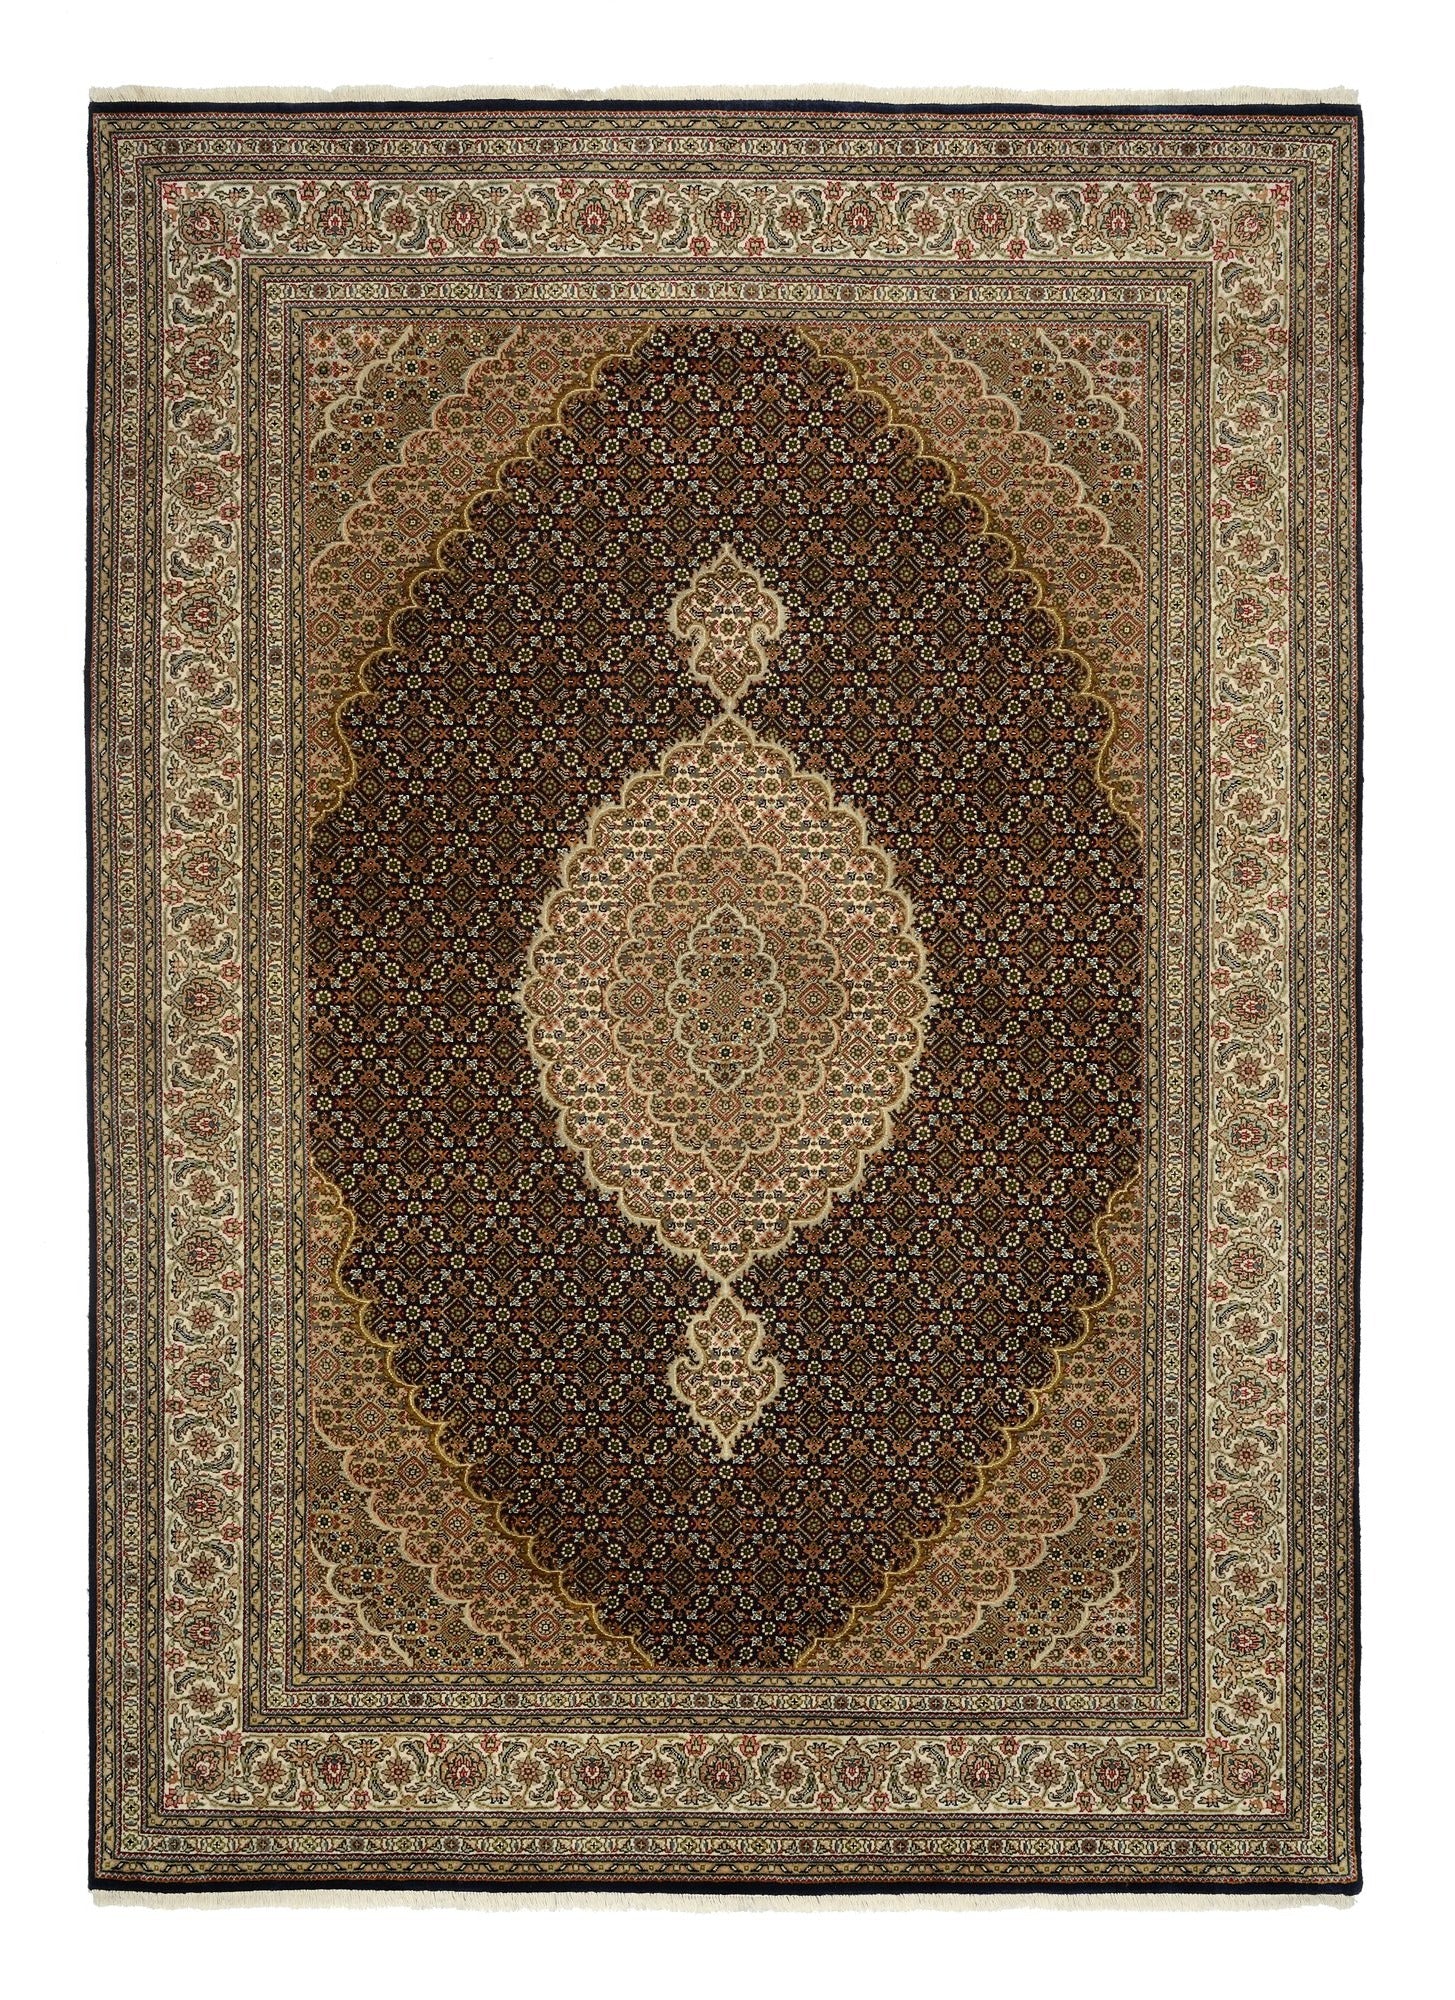 OCI Teppich CAVARI MAHI schwarz-creme echter klassischer Orient-Teppich handgeknüpft